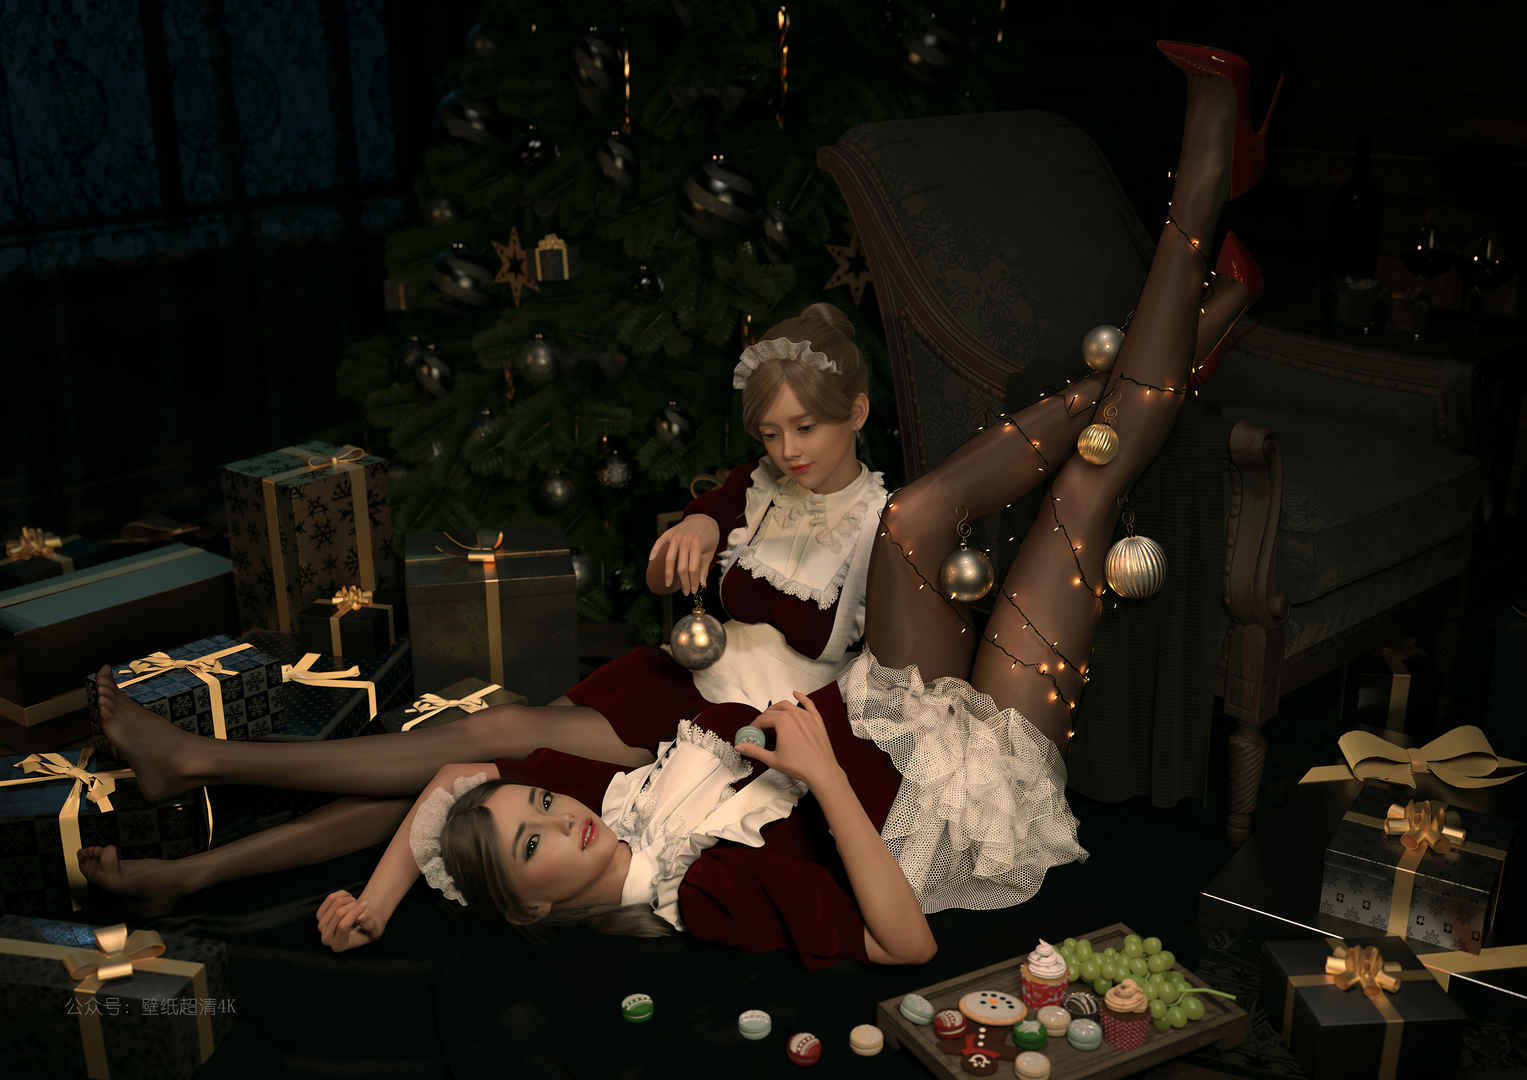 两个女仆 美腿 黑丝袜 圣诞节 圣诞树 圣诞礼物4k动漫壁纸-